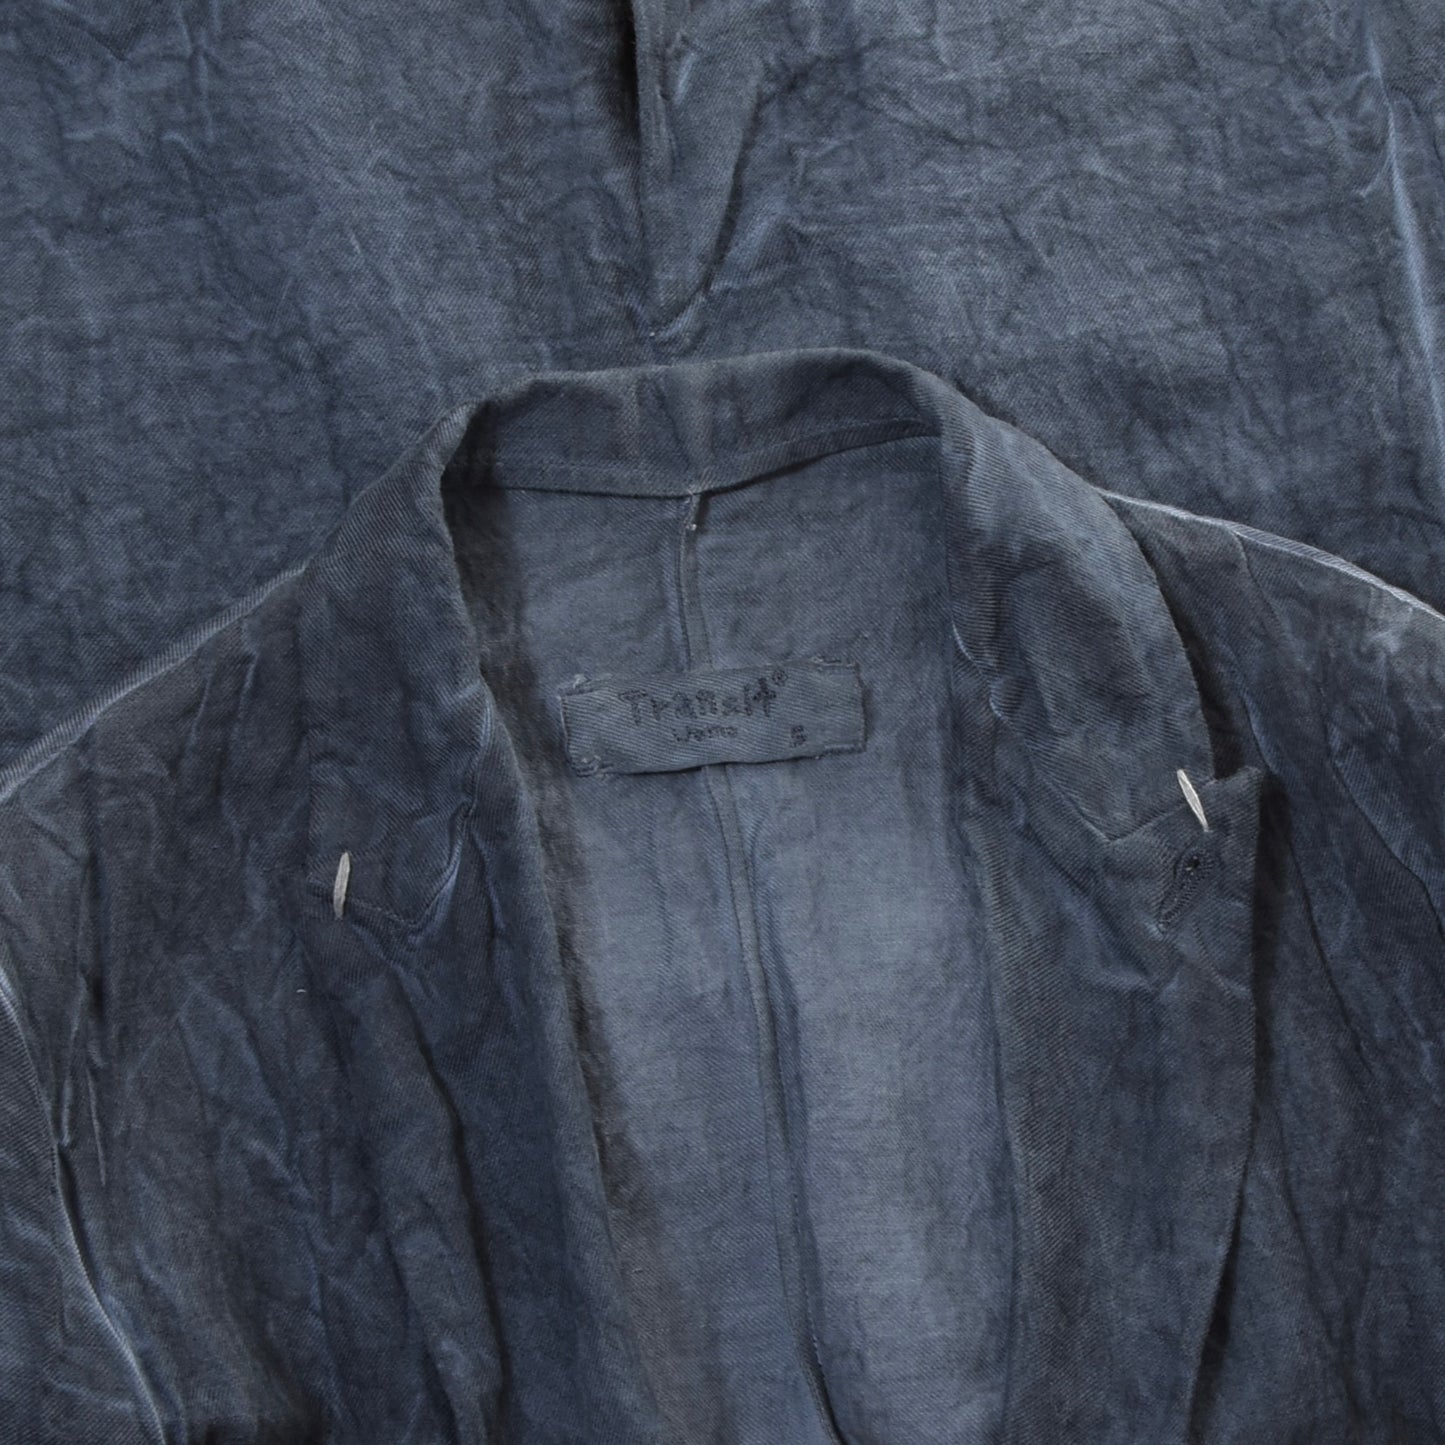 Transit Uomo Cotton-Hemp-Metal Jacket Size S - Blue